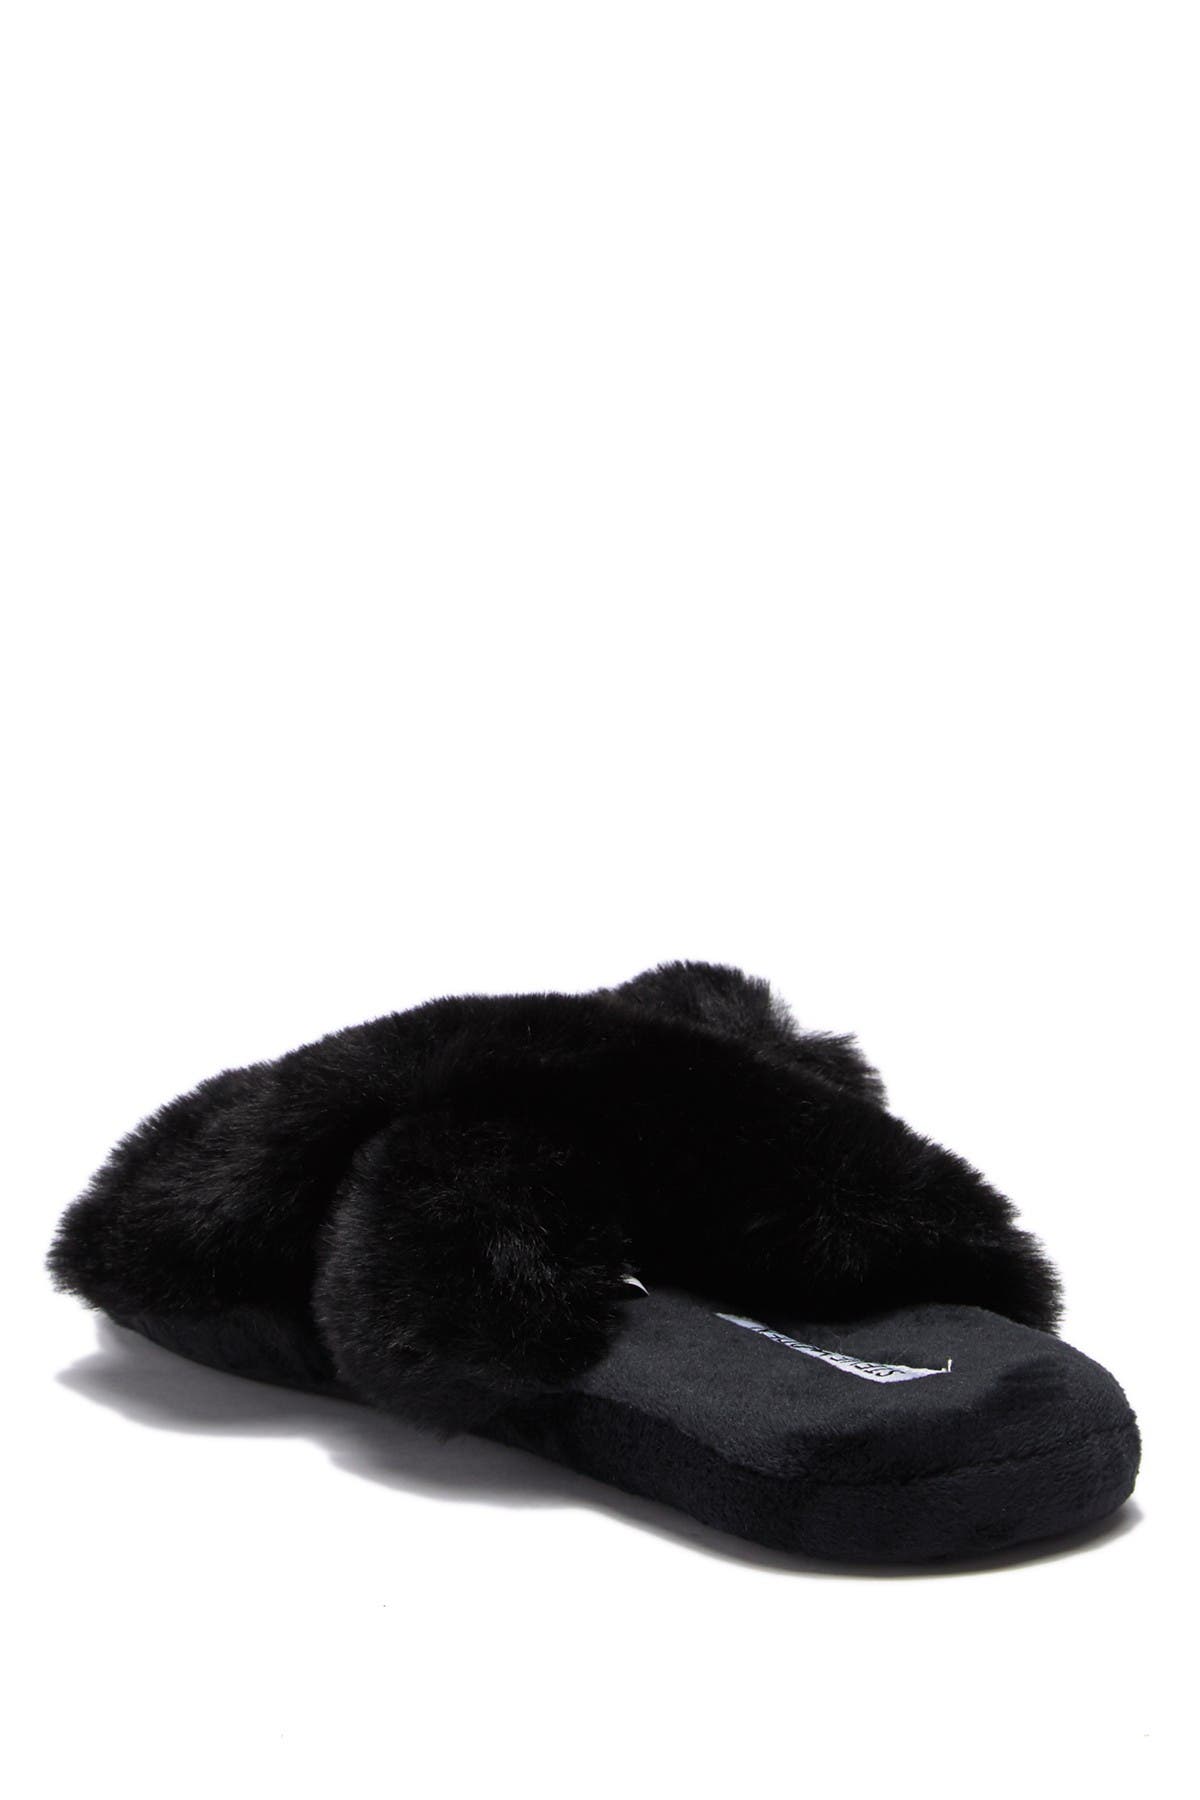 steve madden crissy faux fur slipper